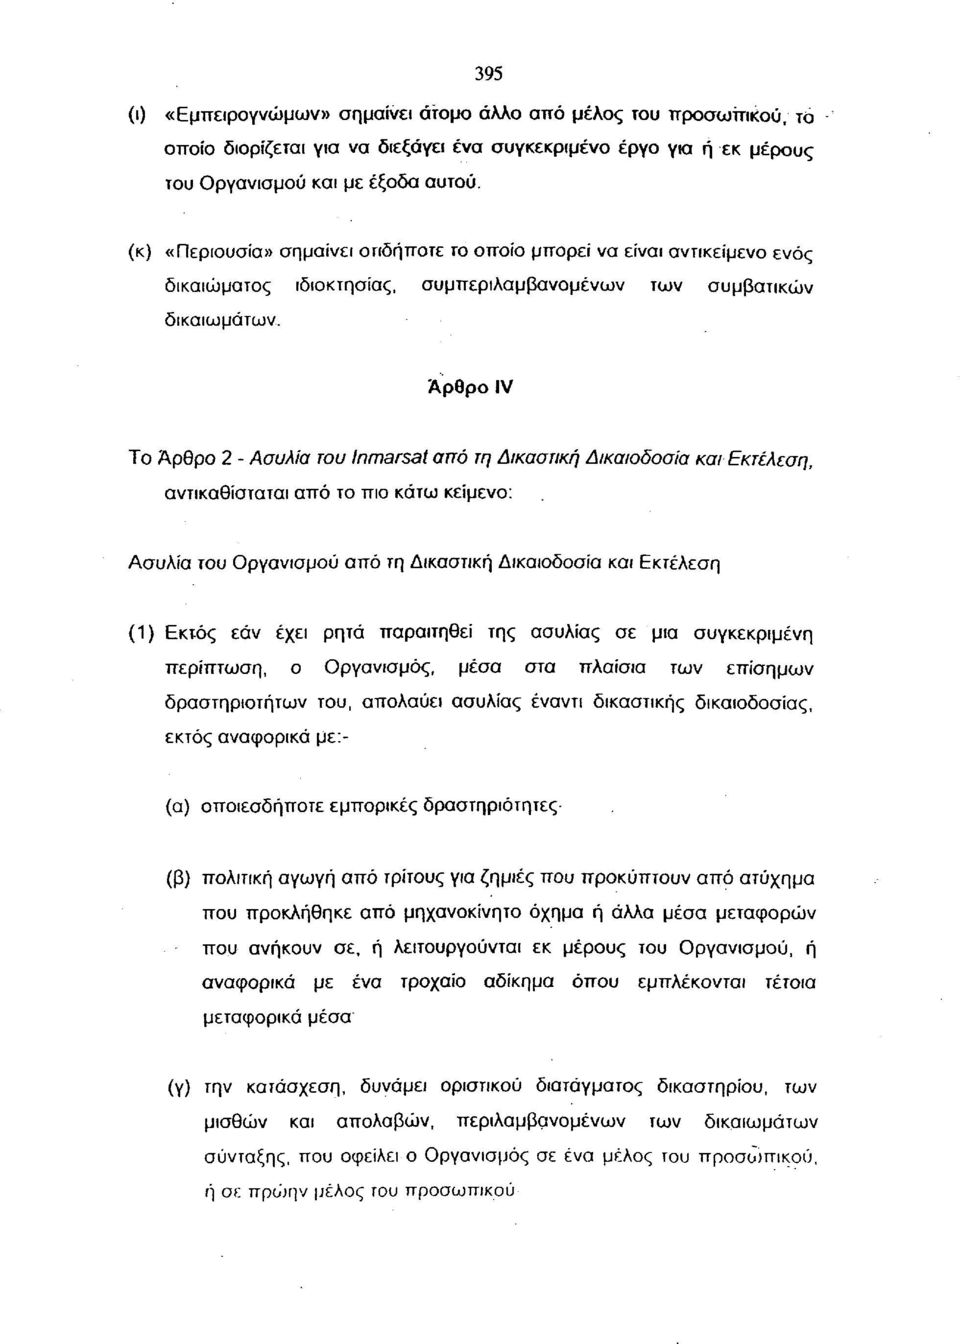 Άρθρο IV Το Άρθρο 2 - Ασυλία του Inmarsat από τη Δικαστική Δικαιοδοσία και Εκτέλεση, αντικαθίσταται από το πιο κάτω κείμενο: Ασυλία του Οργανισμού από τη Δικαστική Δικαιοδοσία και Εκτέλεση (1) Εκτός